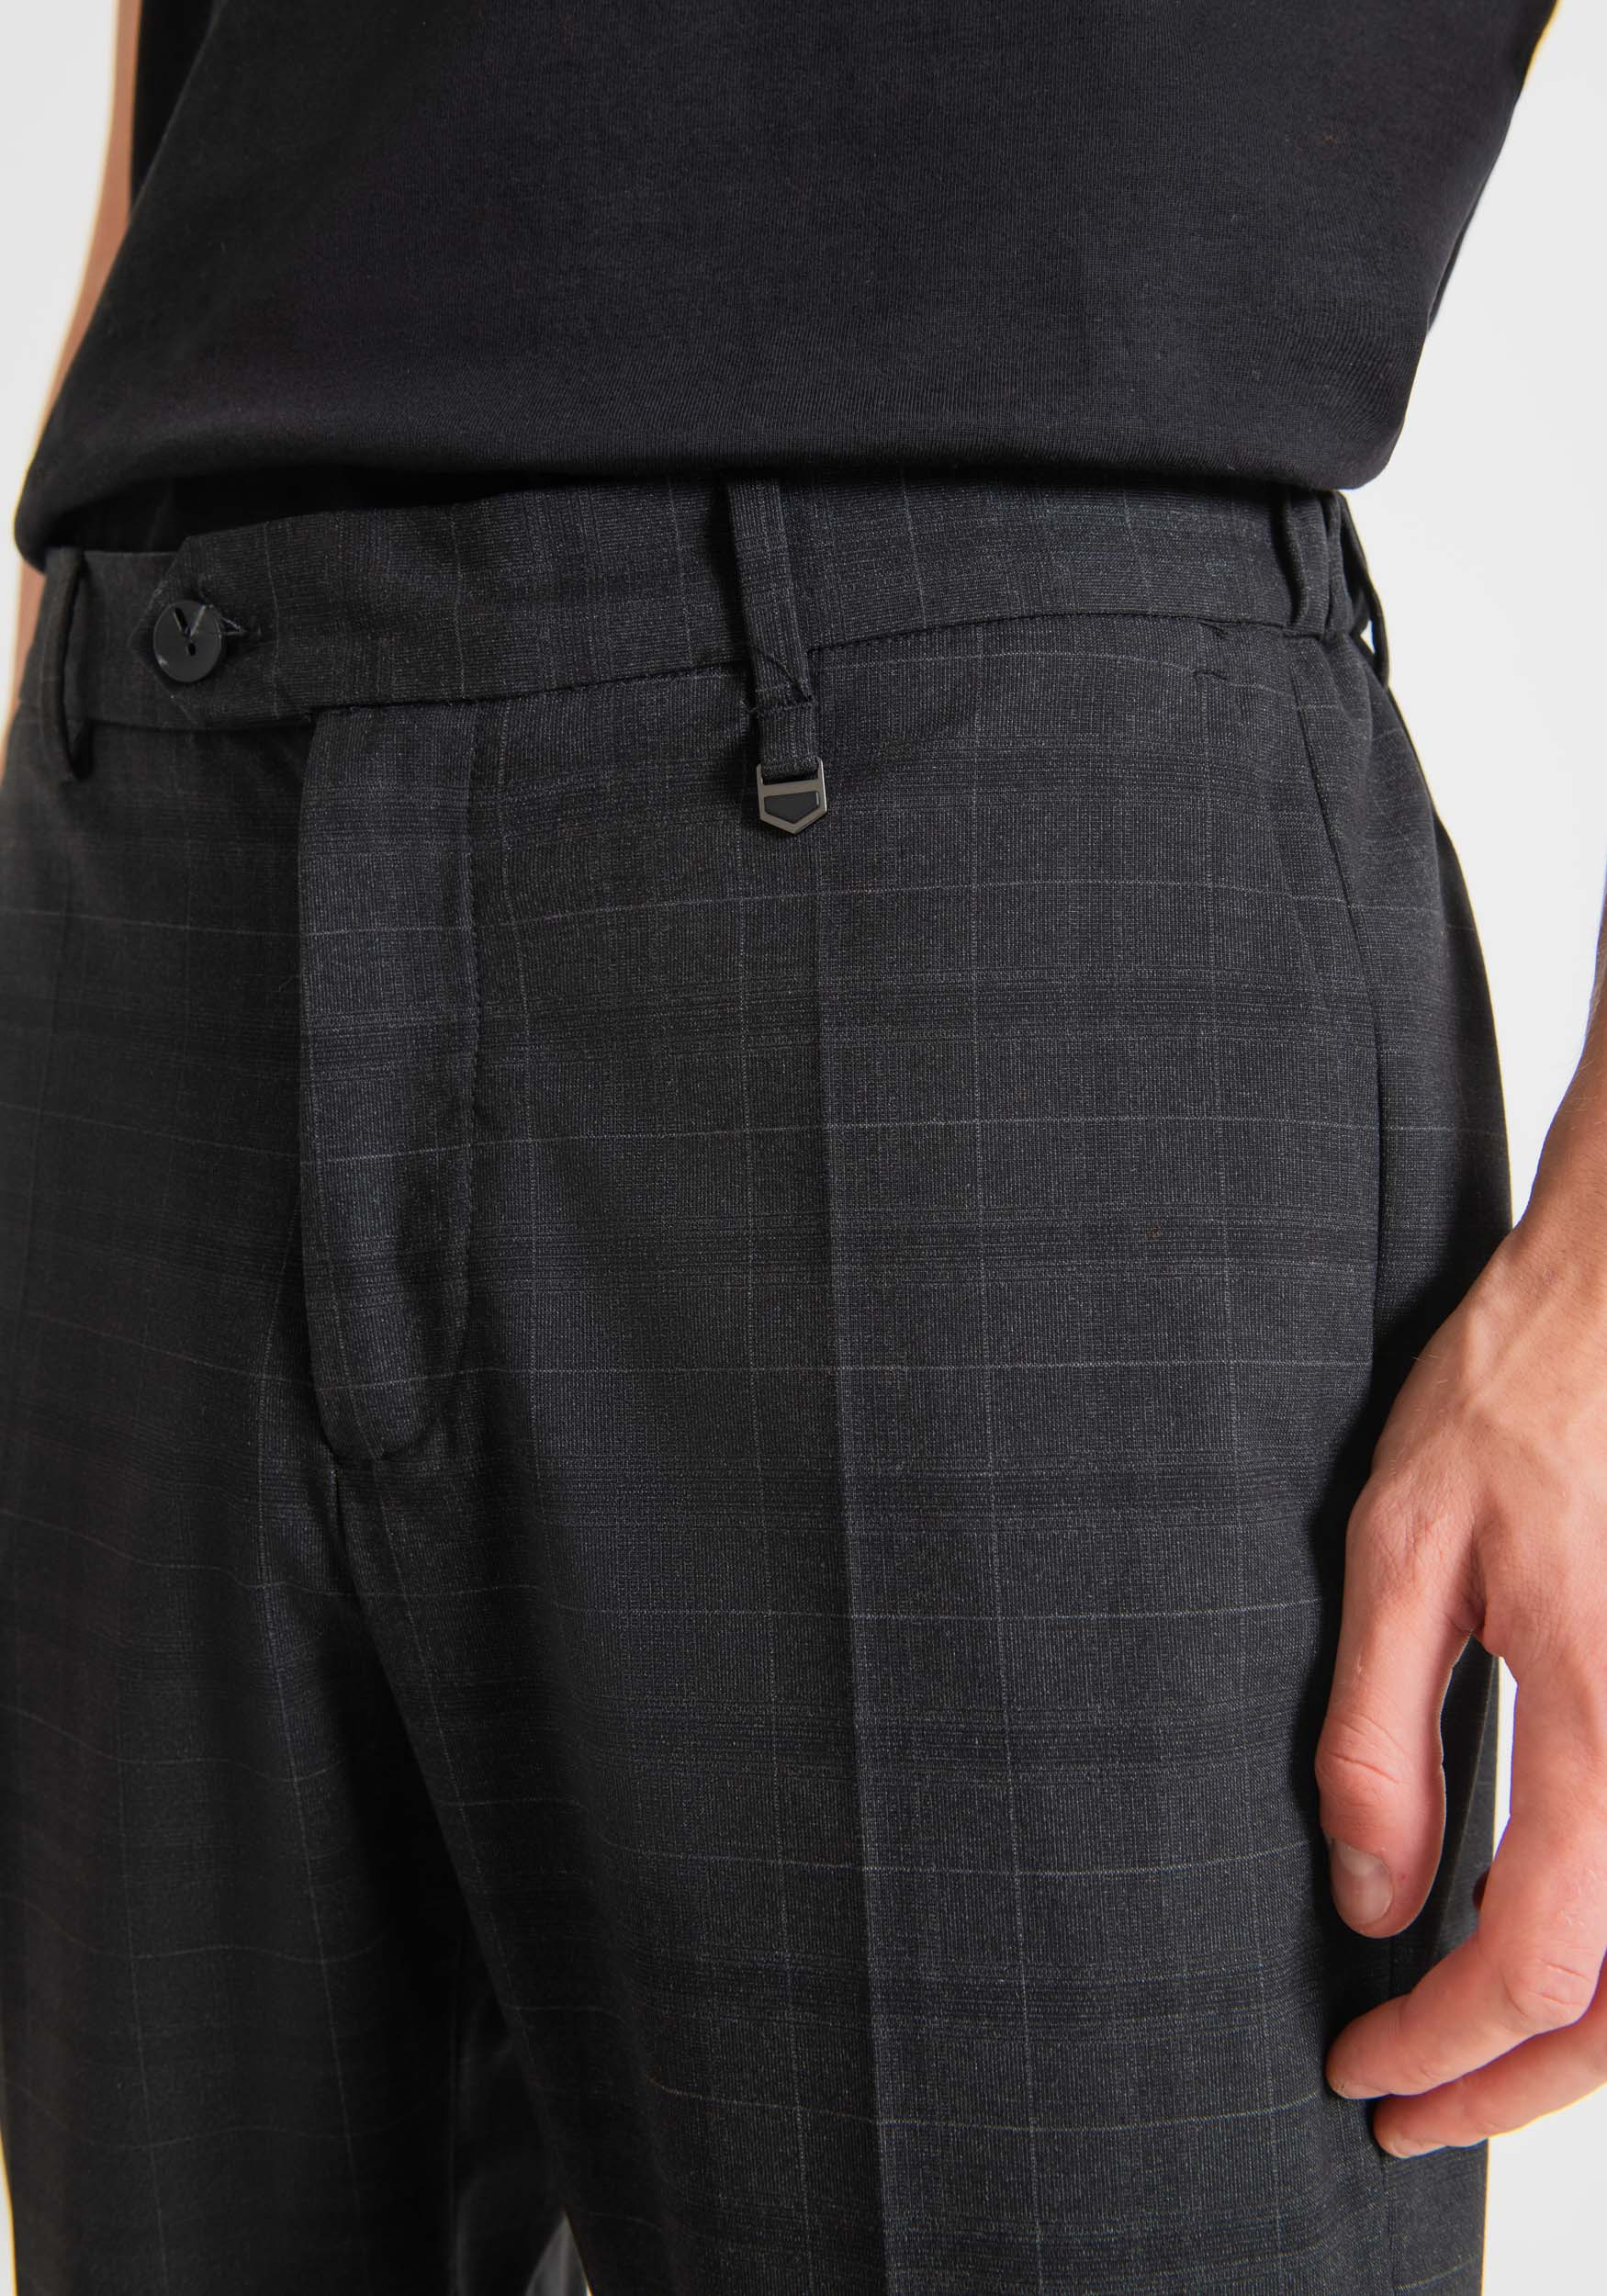 Antony Morato Pantalon Slim Ankle Length Fit Rad Avec Motif A Carreaux Noir | Homme Pantalons